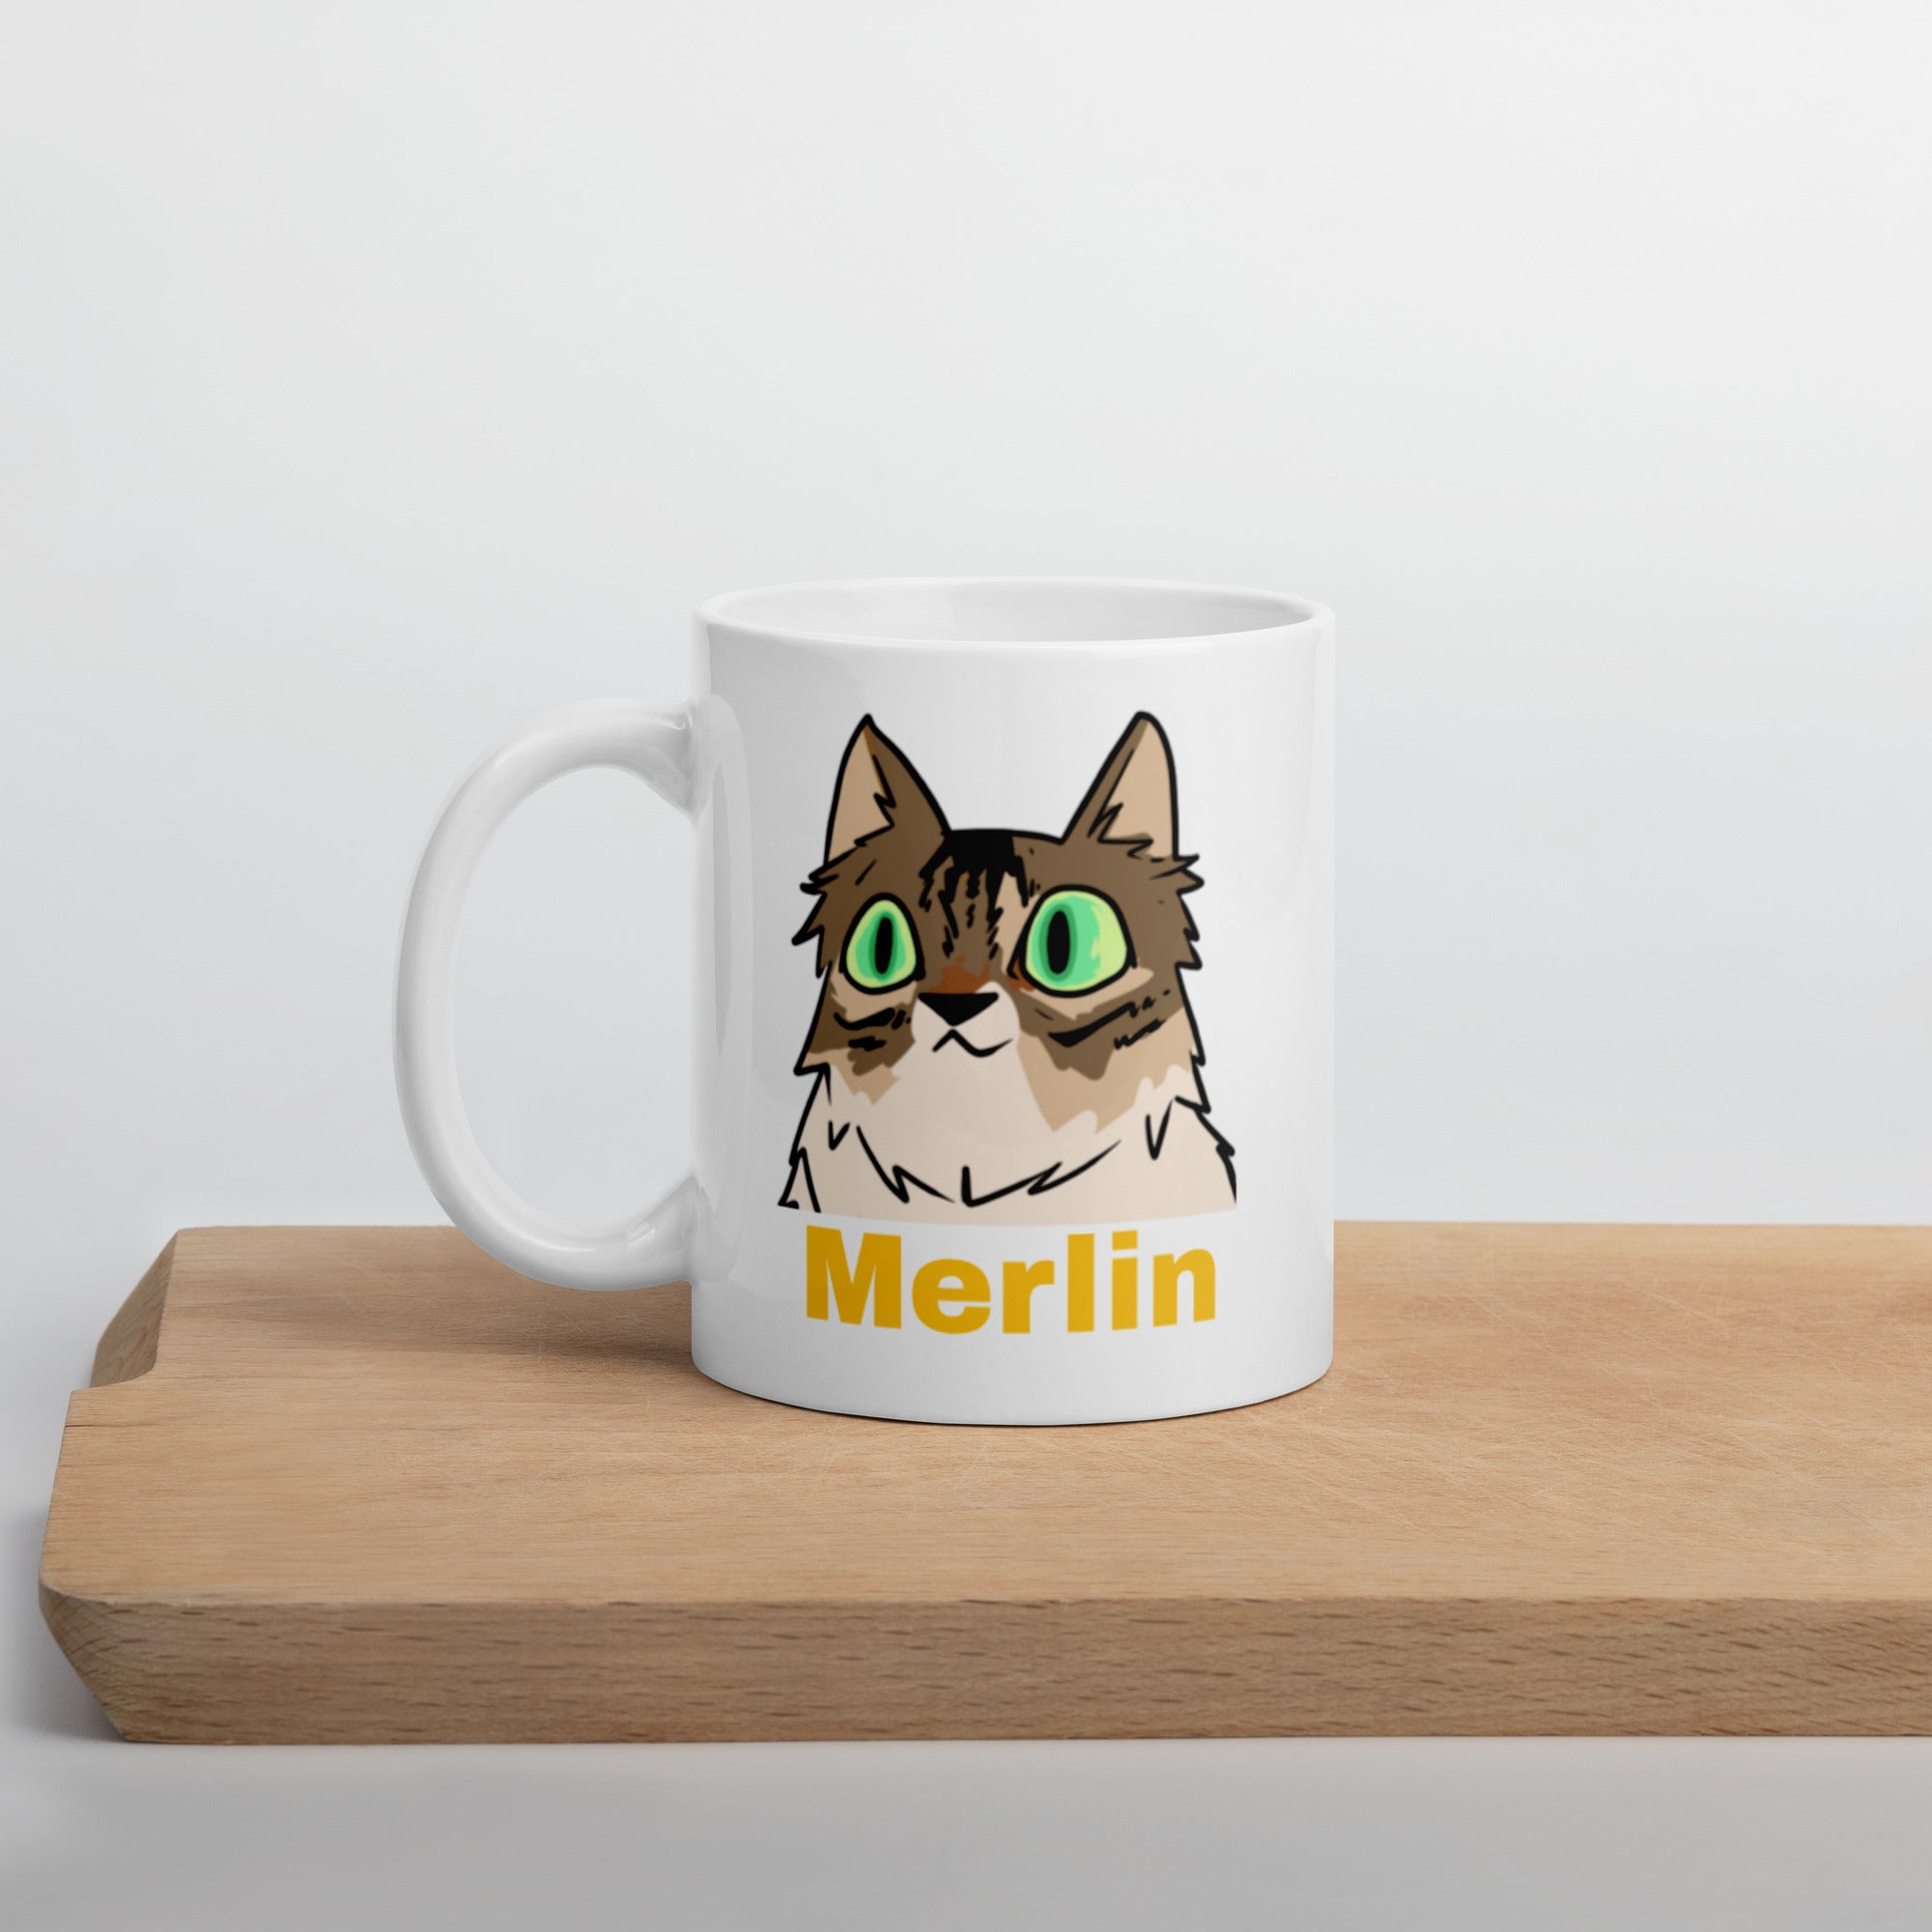 Taza de Merlin